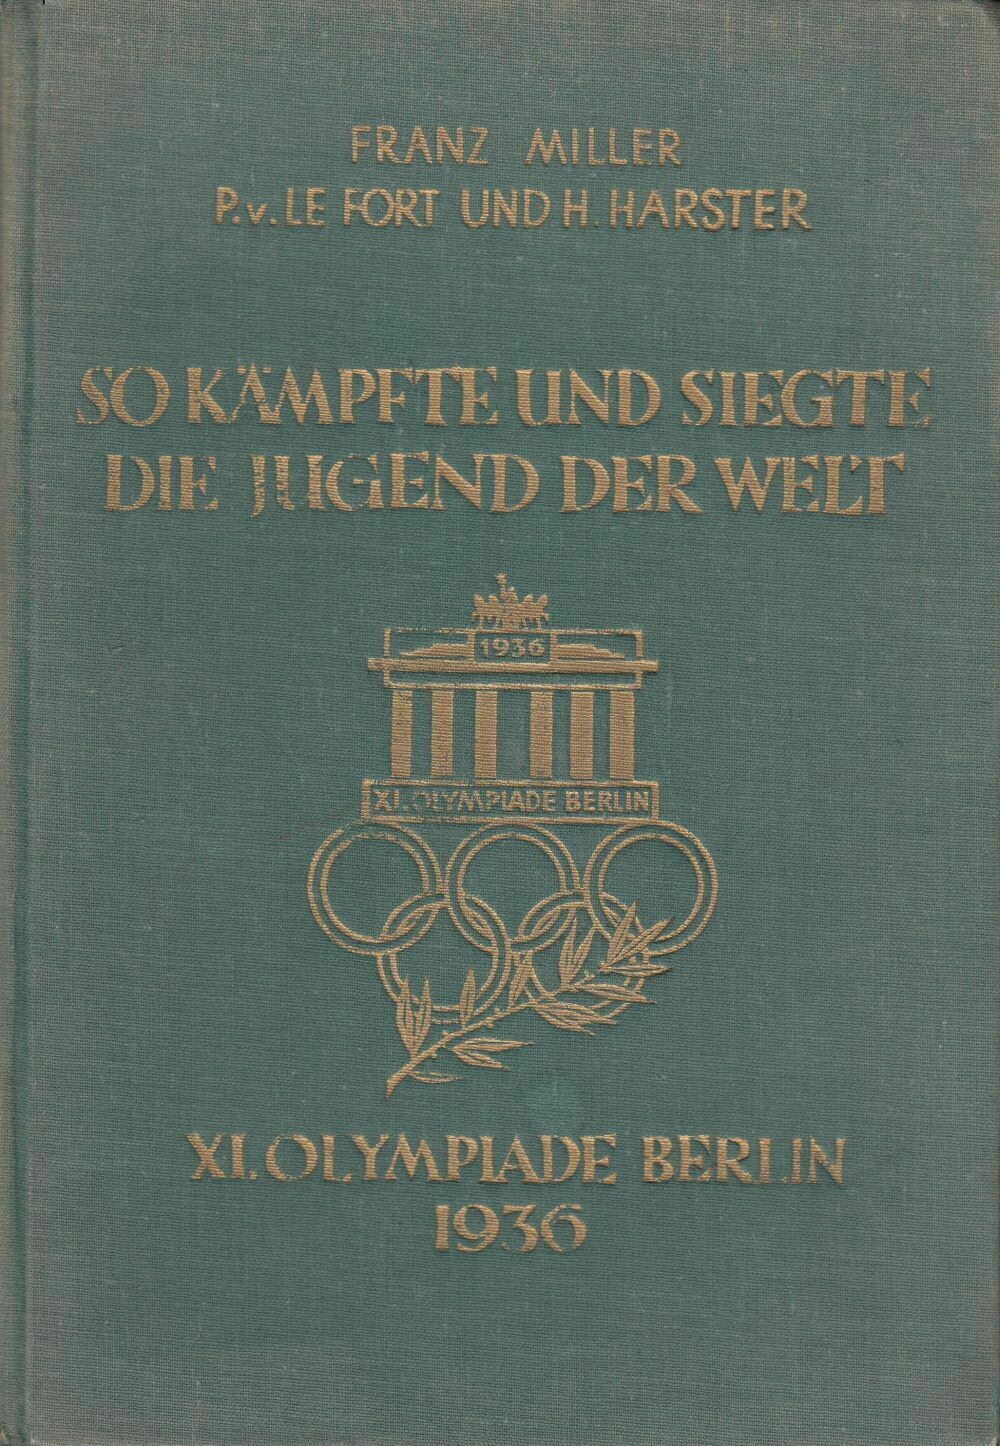 So kämpfte und siegte die Jugend der Welt - XI. Olympiade Berlin 1936